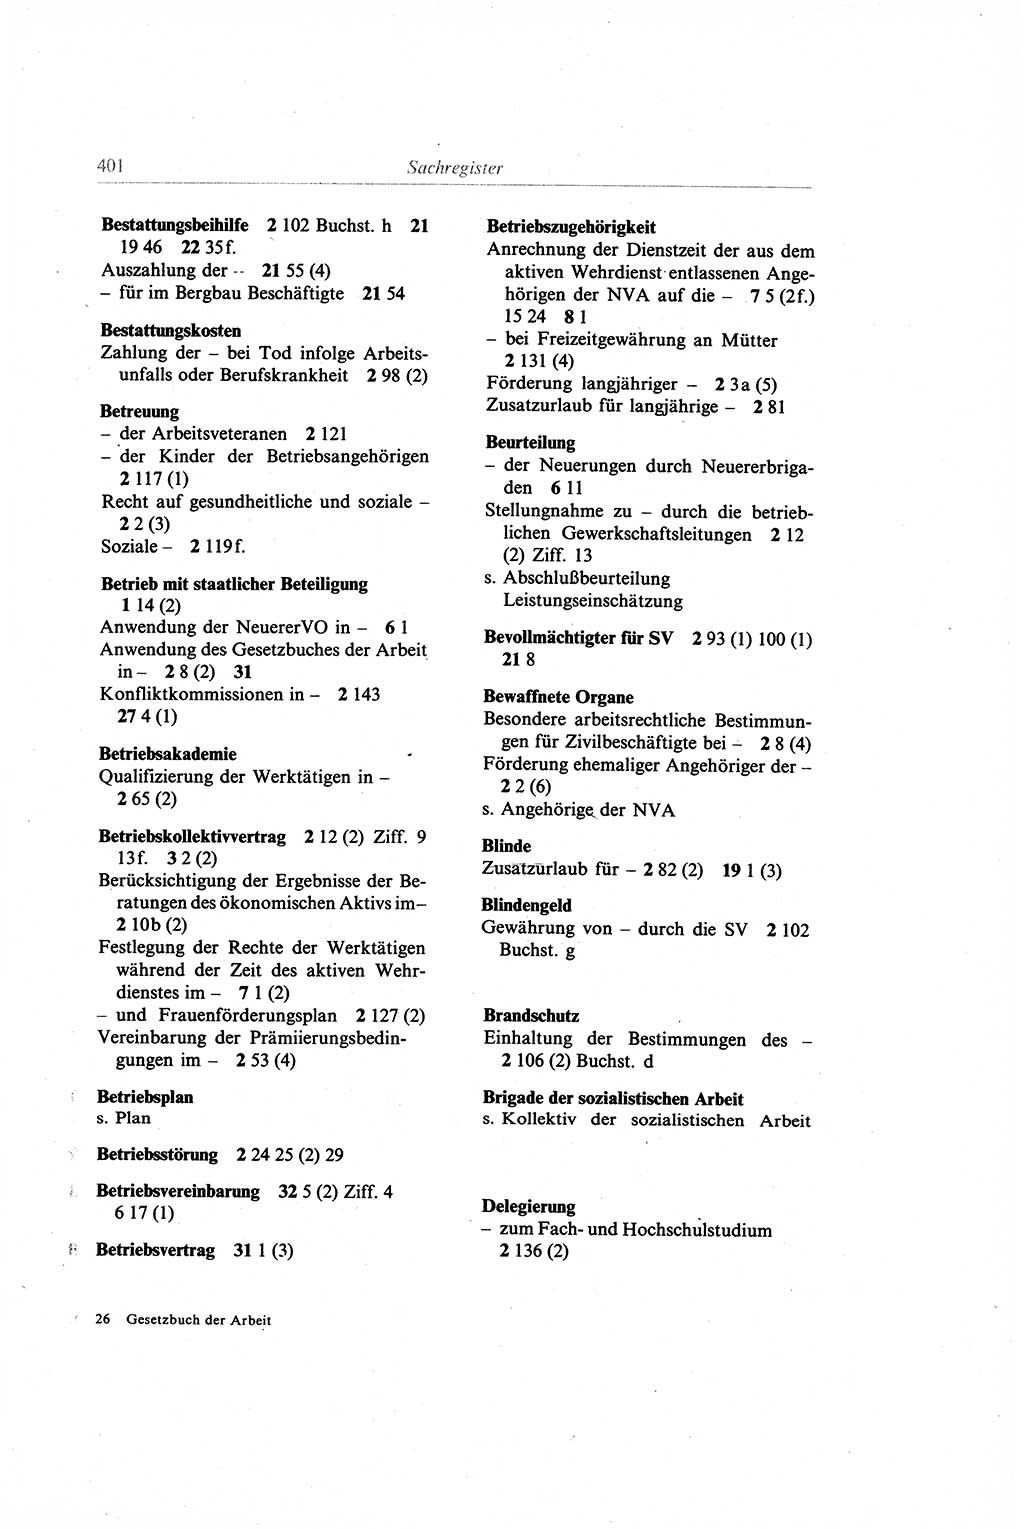 Gesetzbuch der Arbeit (GBA) und andere ausgewählte rechtliche Bestimmungen [Deutsche Demokratische Republik (DDR)] 1968, Seite 401 (GBA DDR 1968, S. 401)